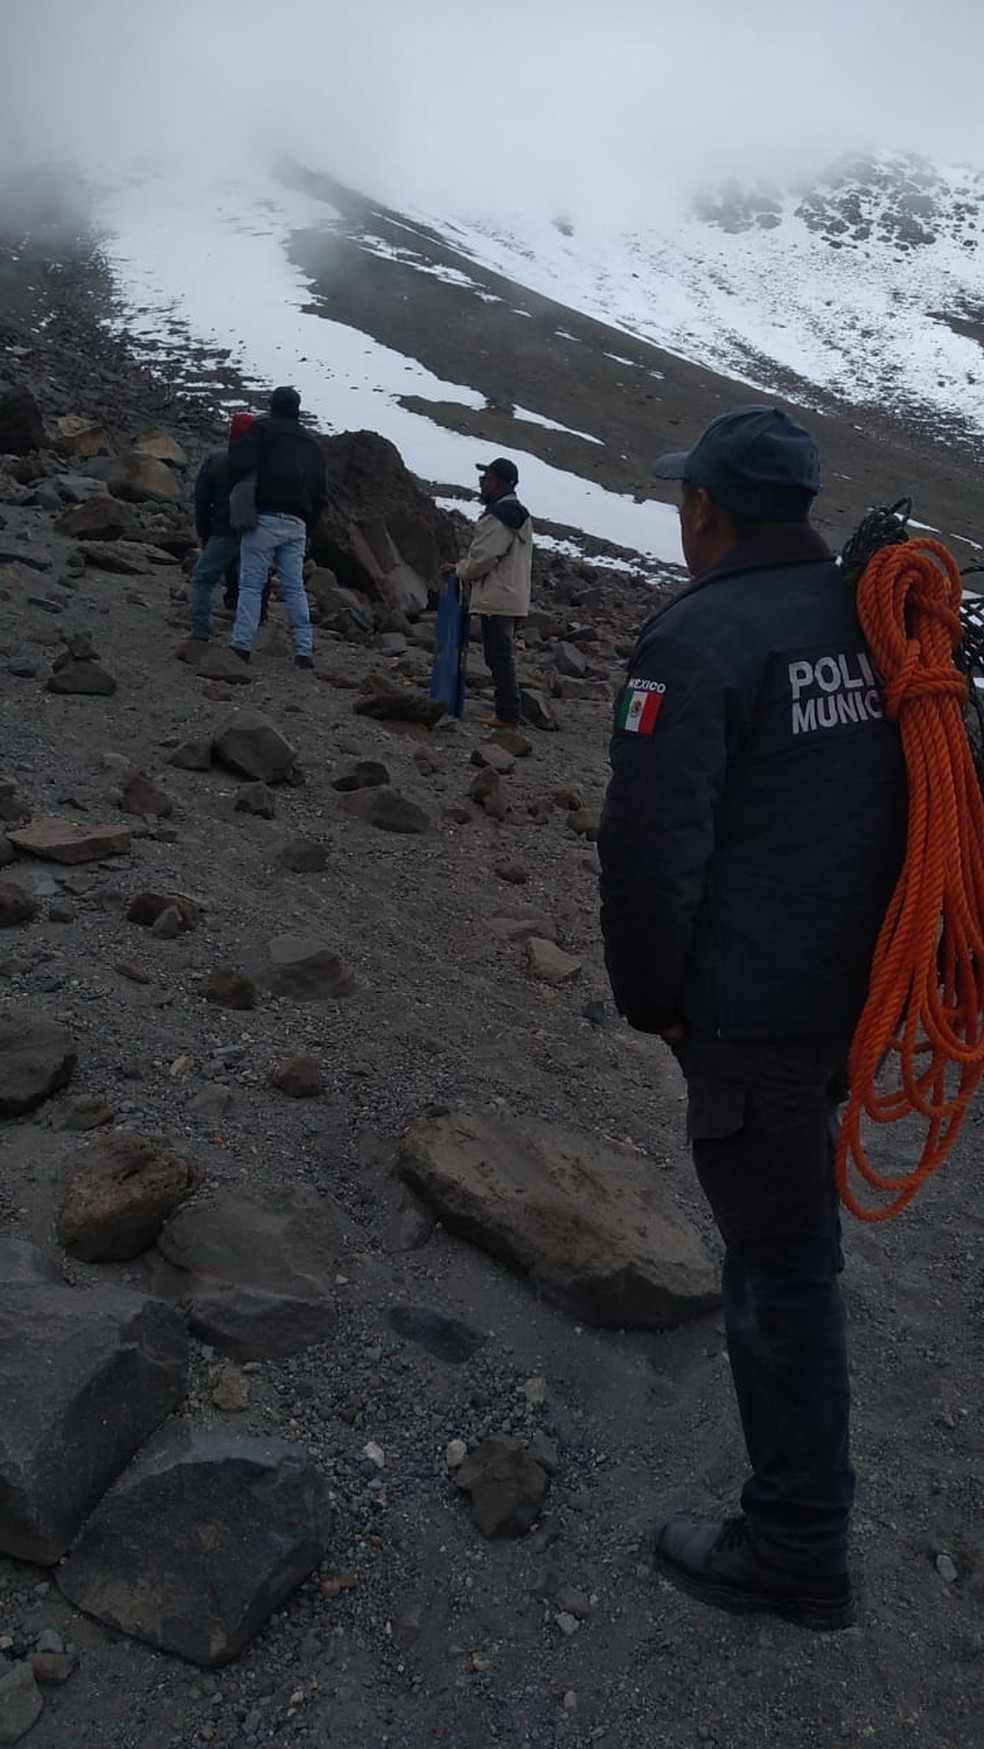 Quatro alpinistas morrem a tentar escalar vulcão no México